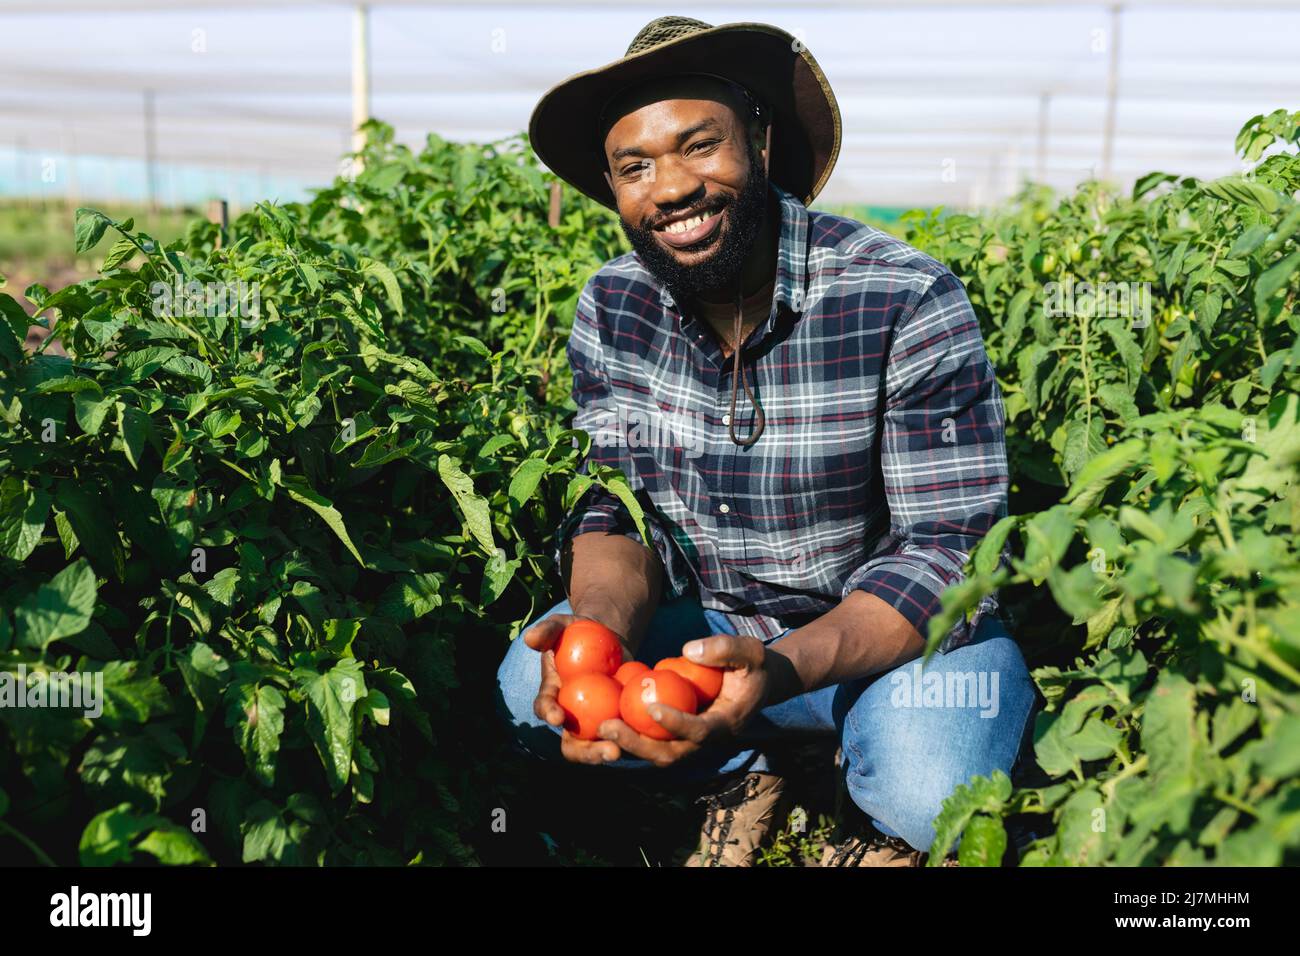 Porträt eines afroamerikanischen Mannes mit mittlerem Erwachsenen, der einen Hut trägt und Tomaten inmitten von Pflanzen im Gewächshaus hält Stockfoto